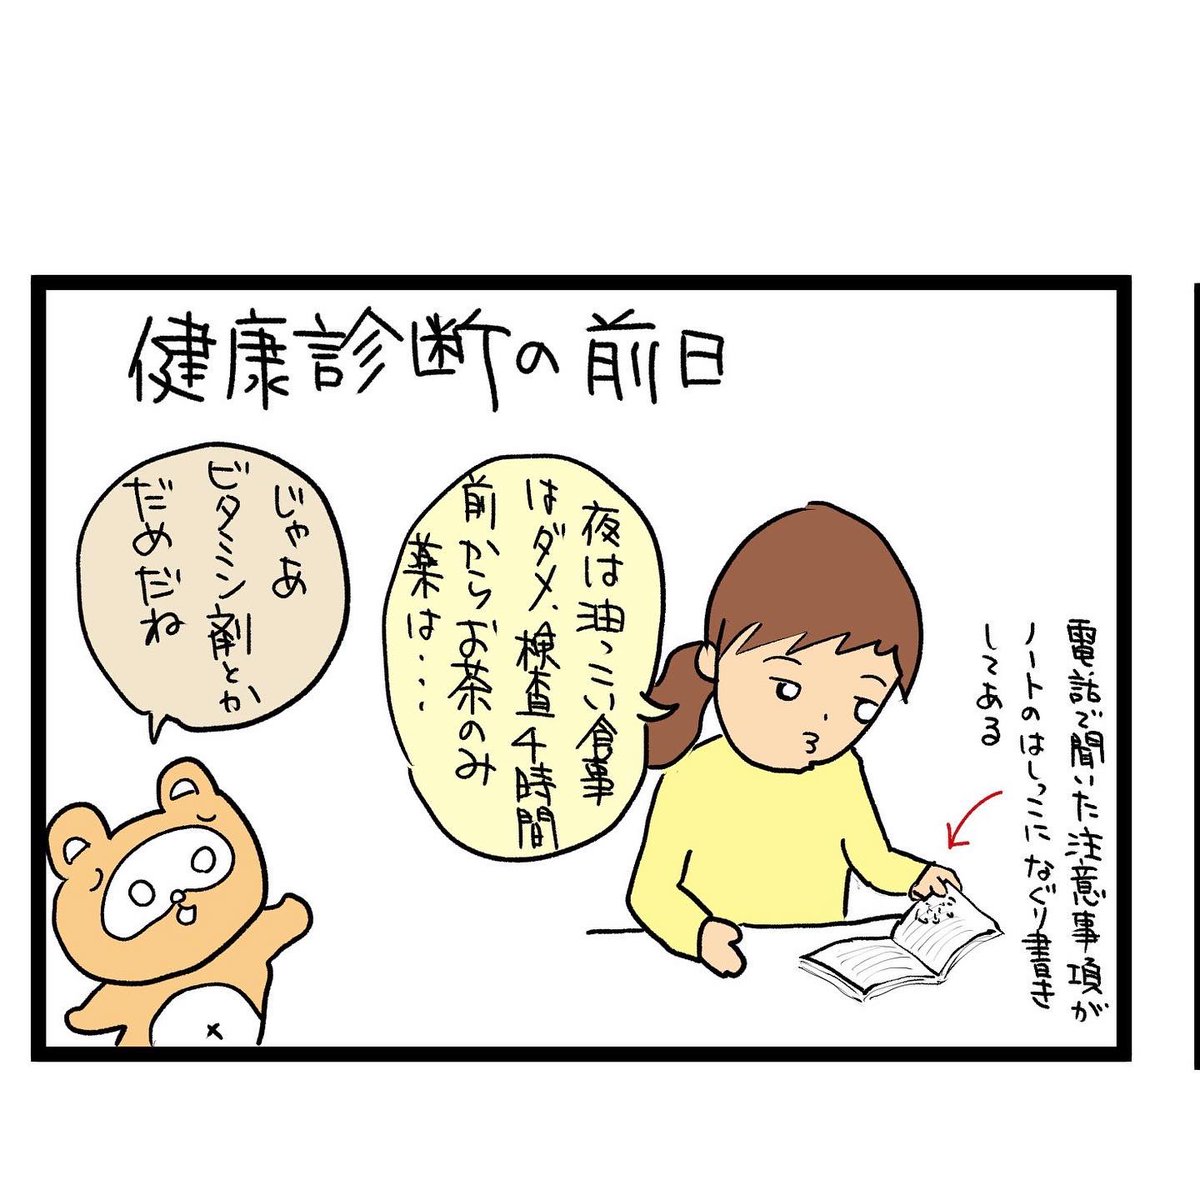 #四コマ漫画
#健康診断
#マツケンサンバ 